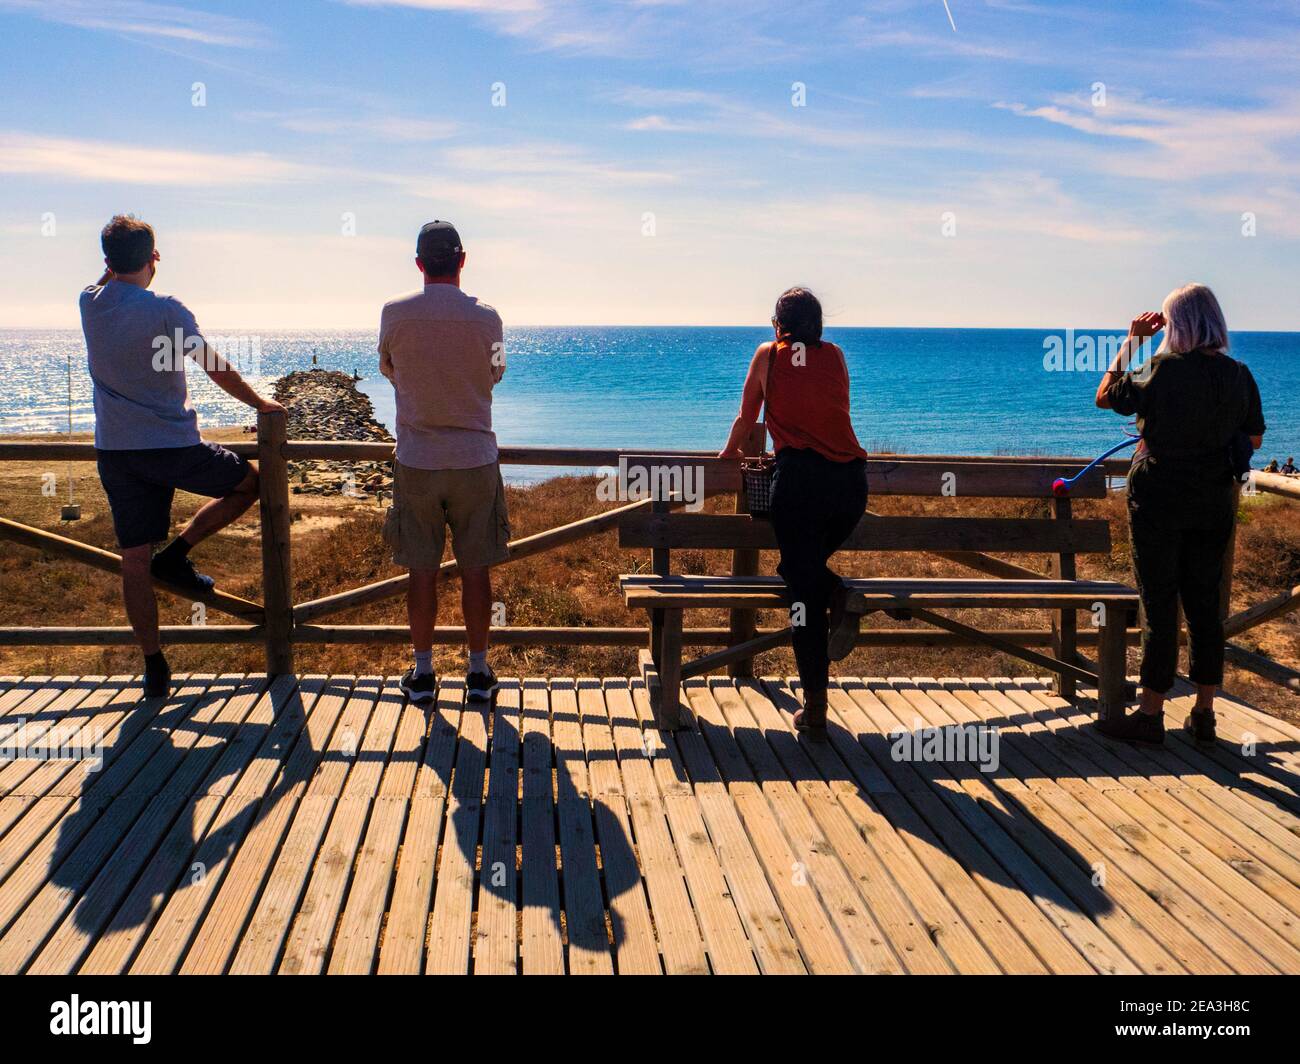 Marbella, Malaga, Espagne. Octobre 2020. Quatre touristes avec leur dos ont tourné regardant la mer sur une plate-forme d'observation en bois sur la côte de Marbella Banque D'Images